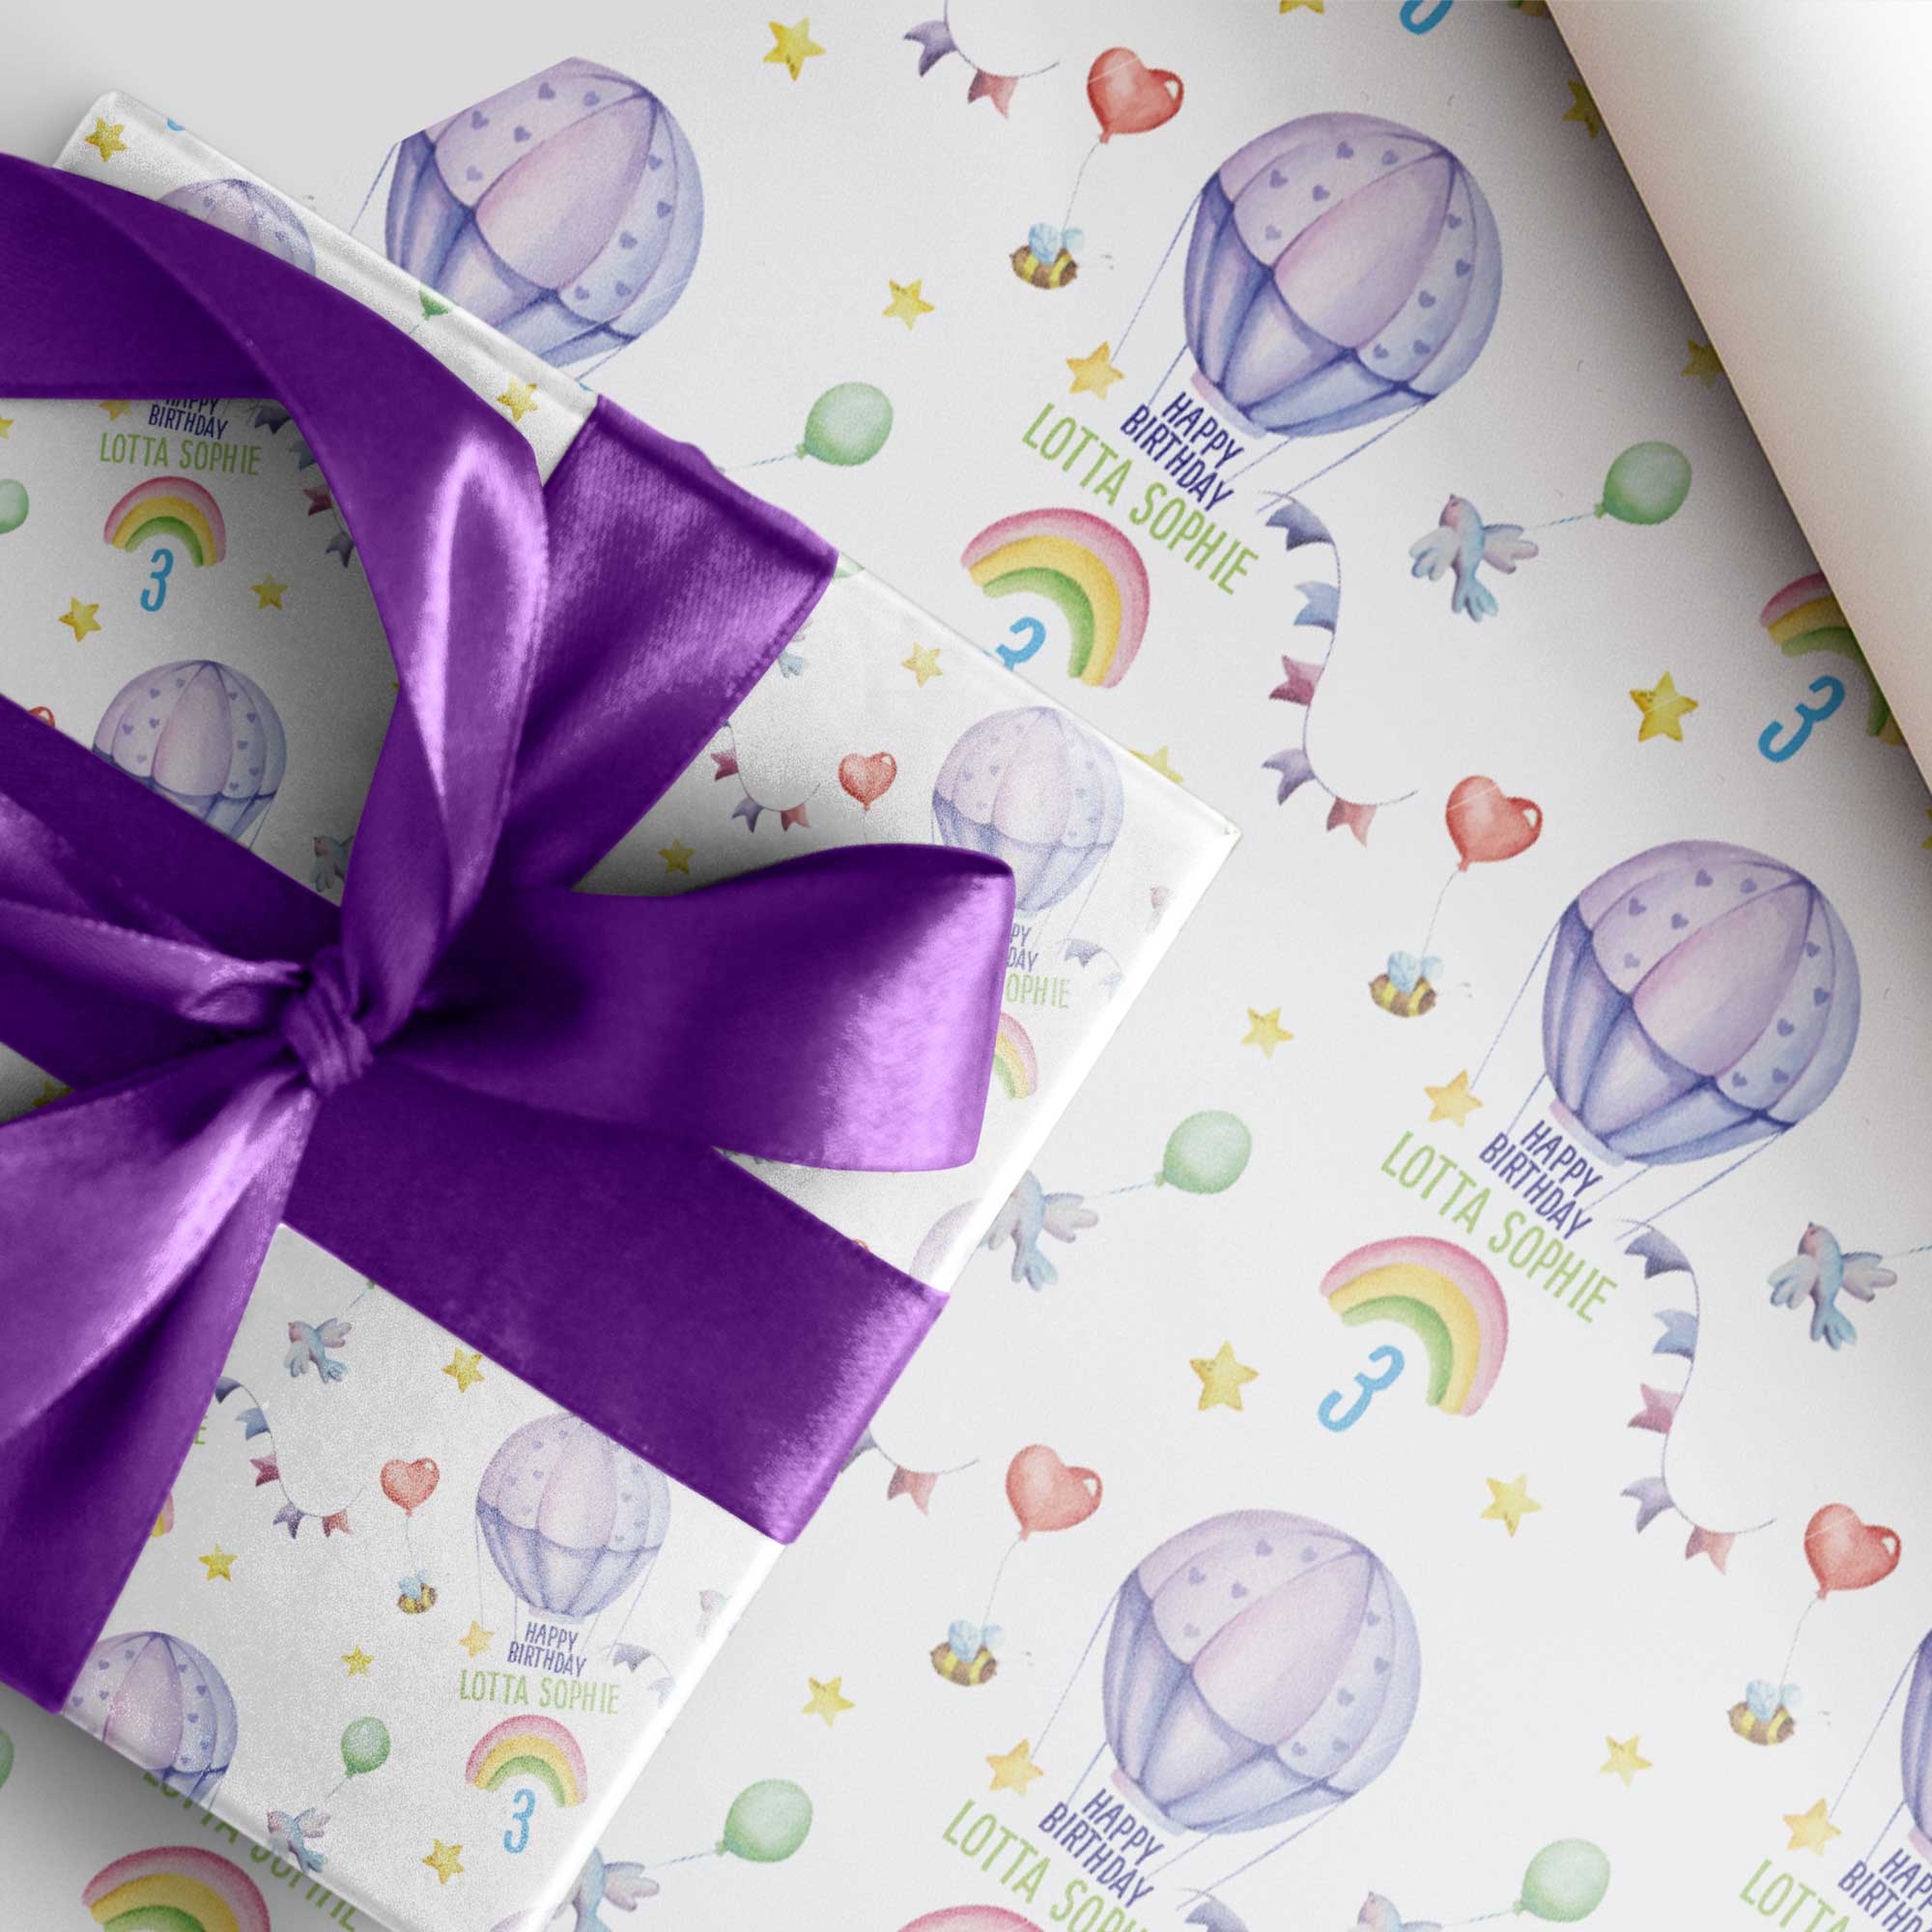 Personalisierbares Geschenkpapier für Kindergeburtstag *Regenbogen *Ballonfahrt *Name + Alter